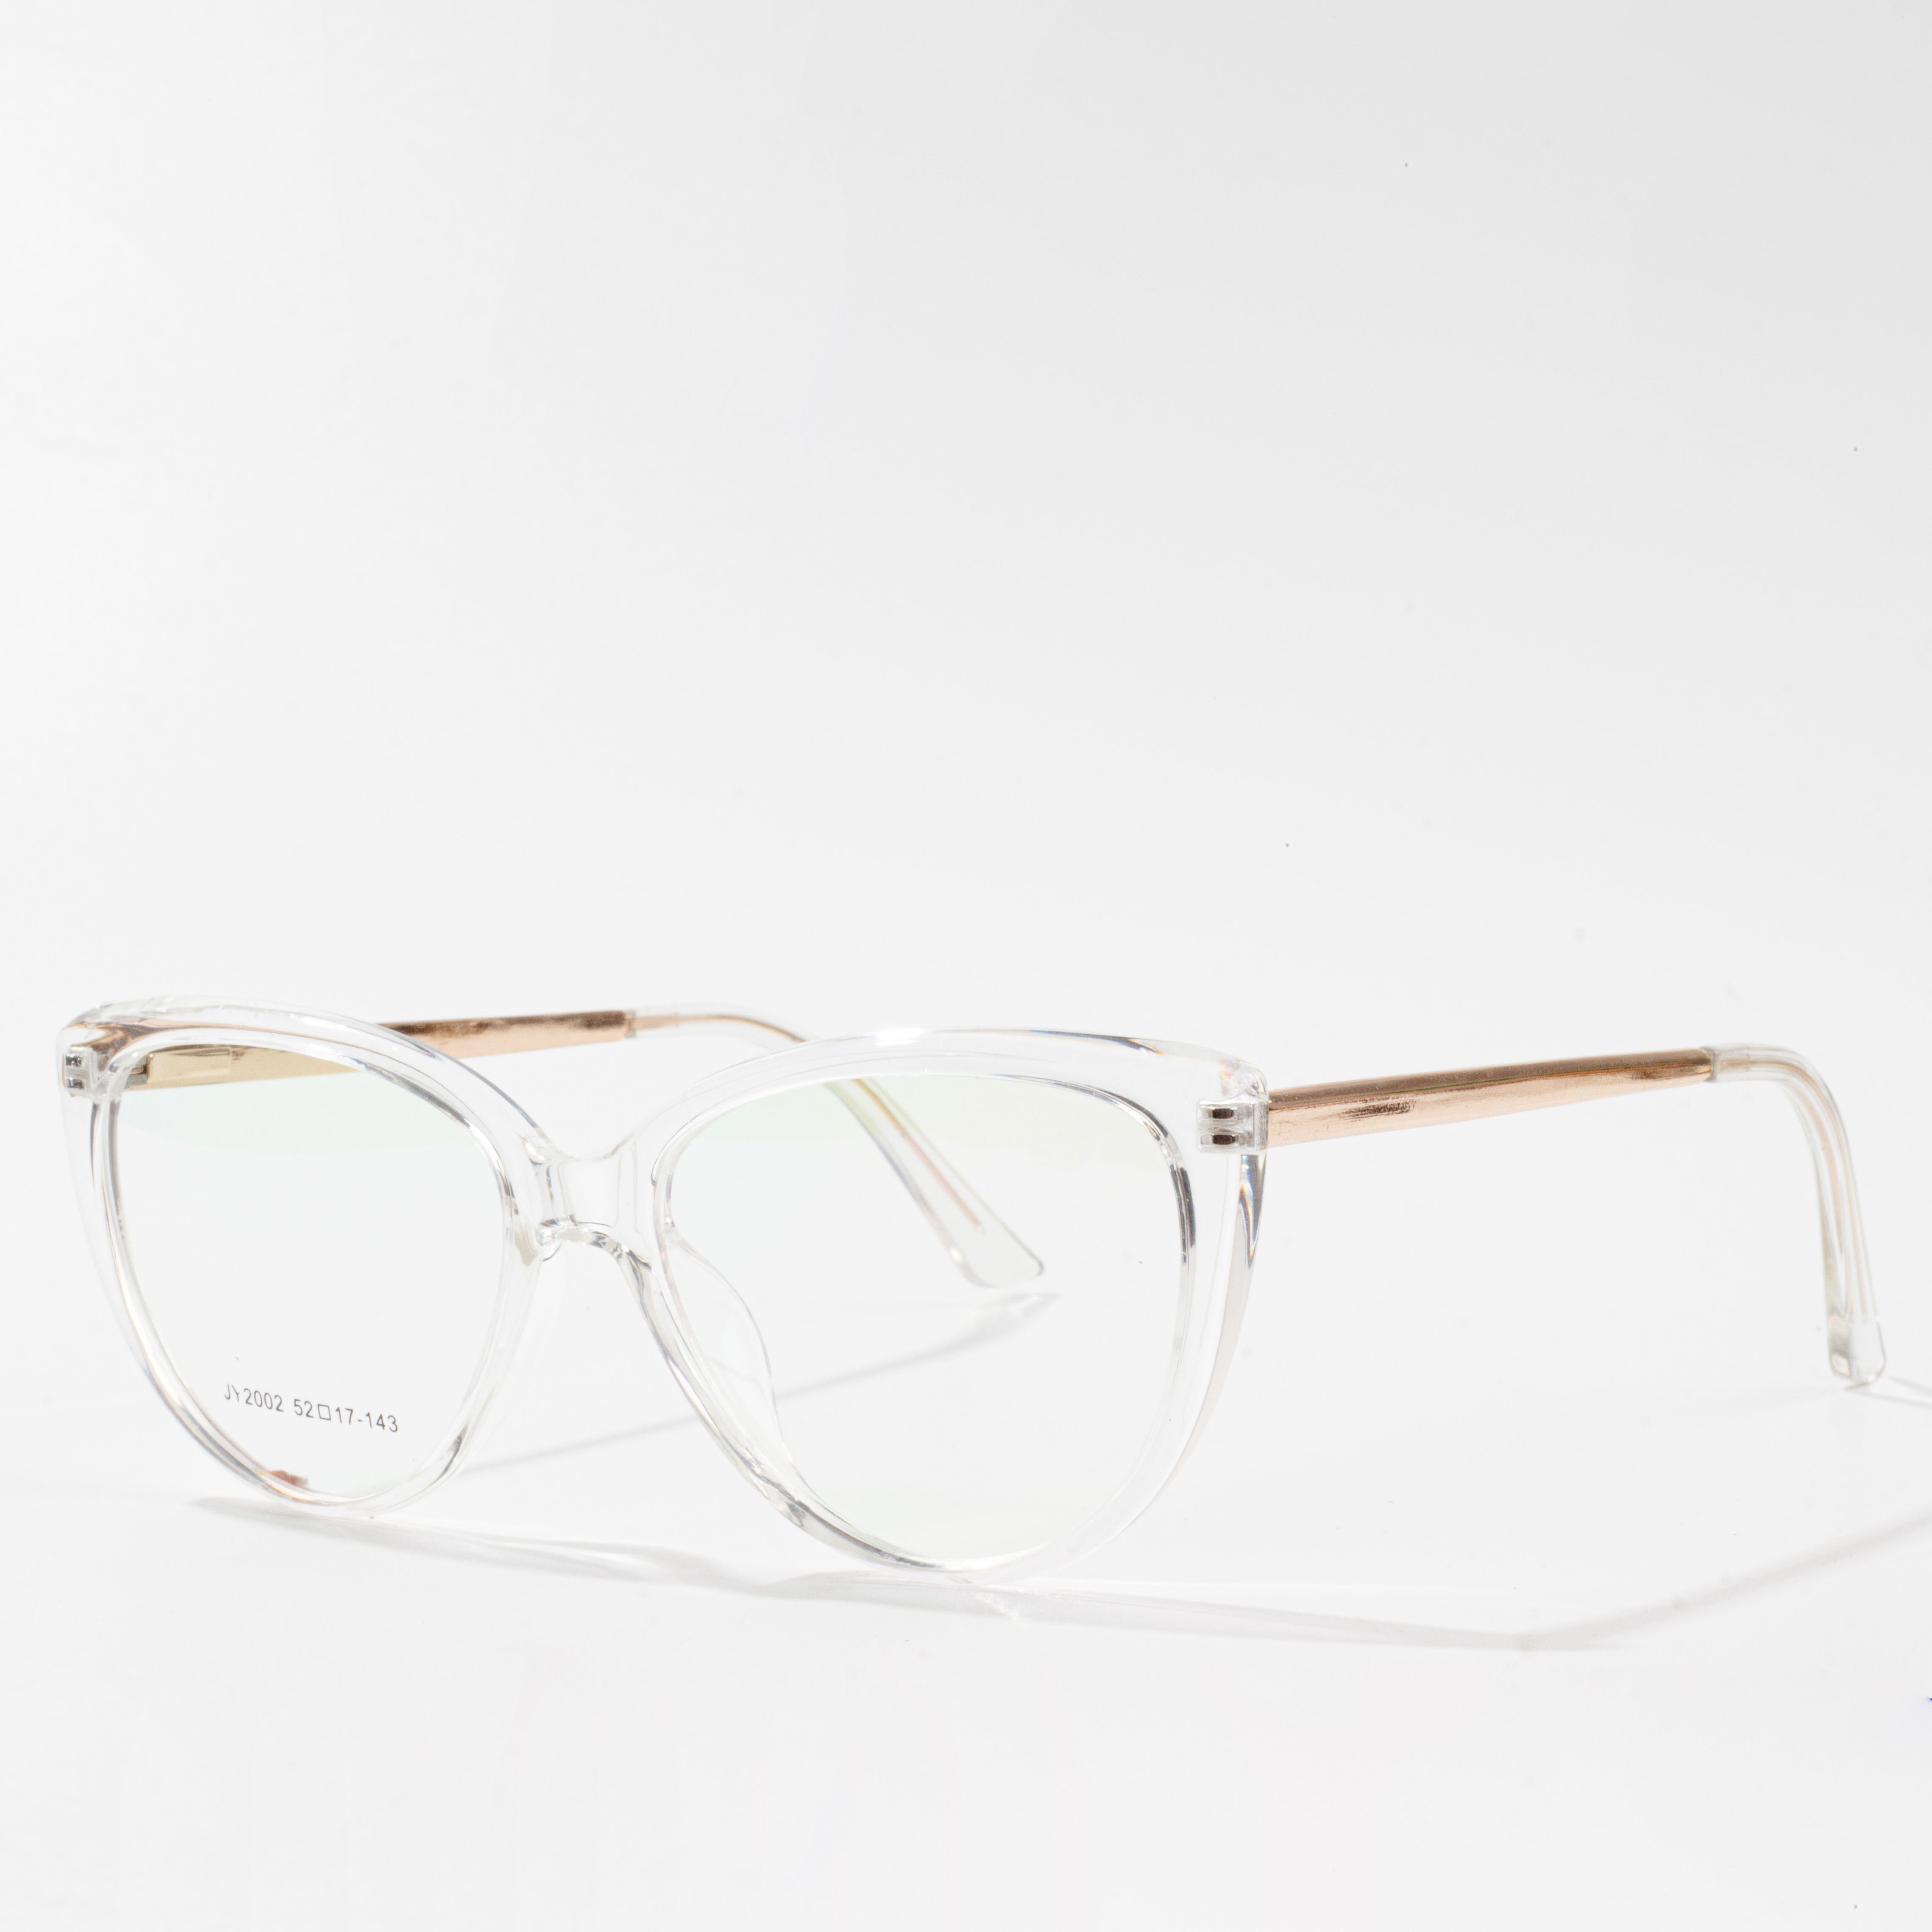 Europeeske brille frames